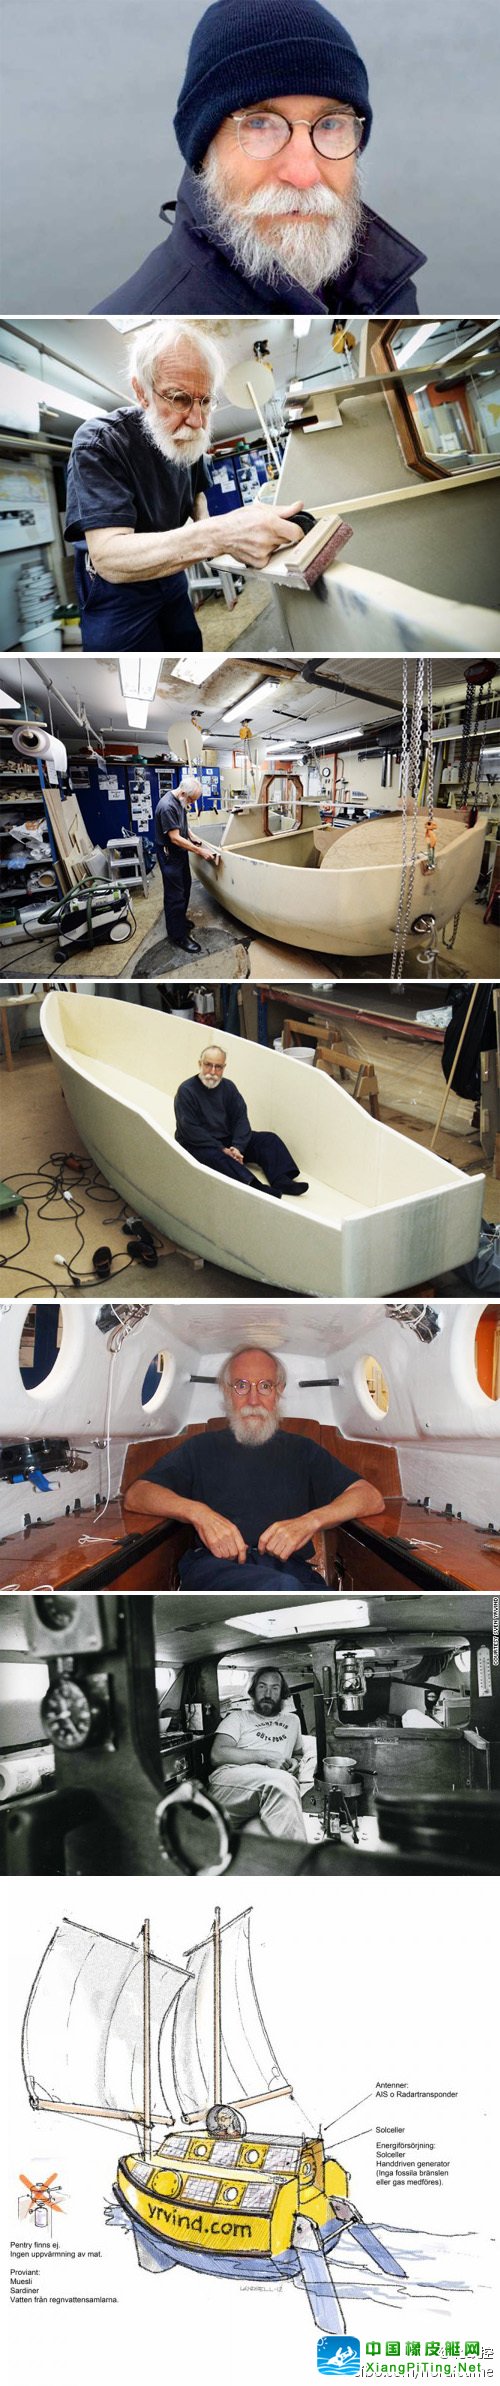 瑞典73岁老汉自制3米浴缸船欲环游世界